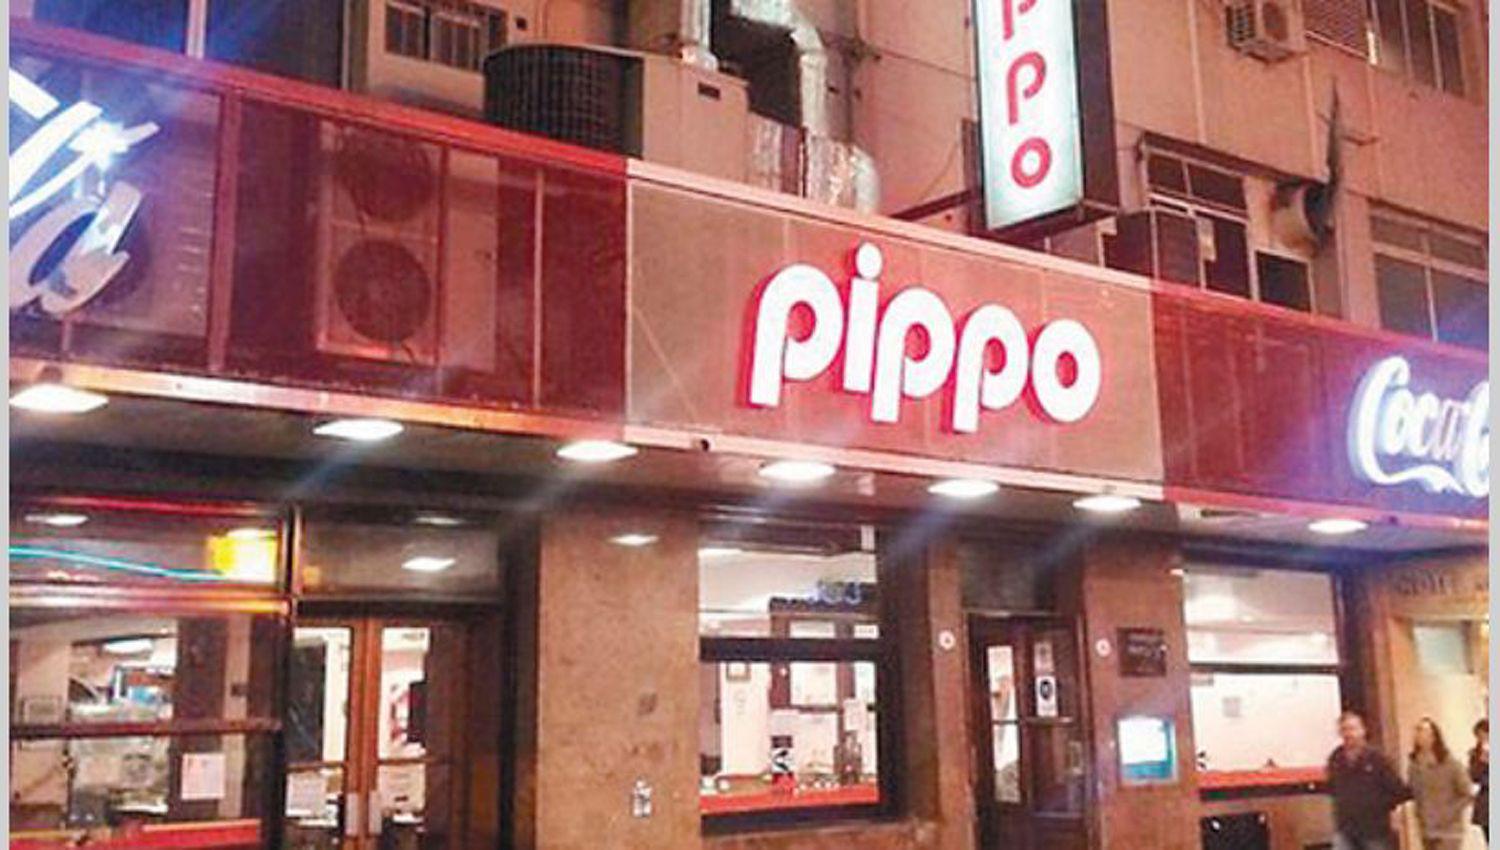 Cerroacute el restaurante Pippo un claacutesico de la gastronomiacutea portentildea